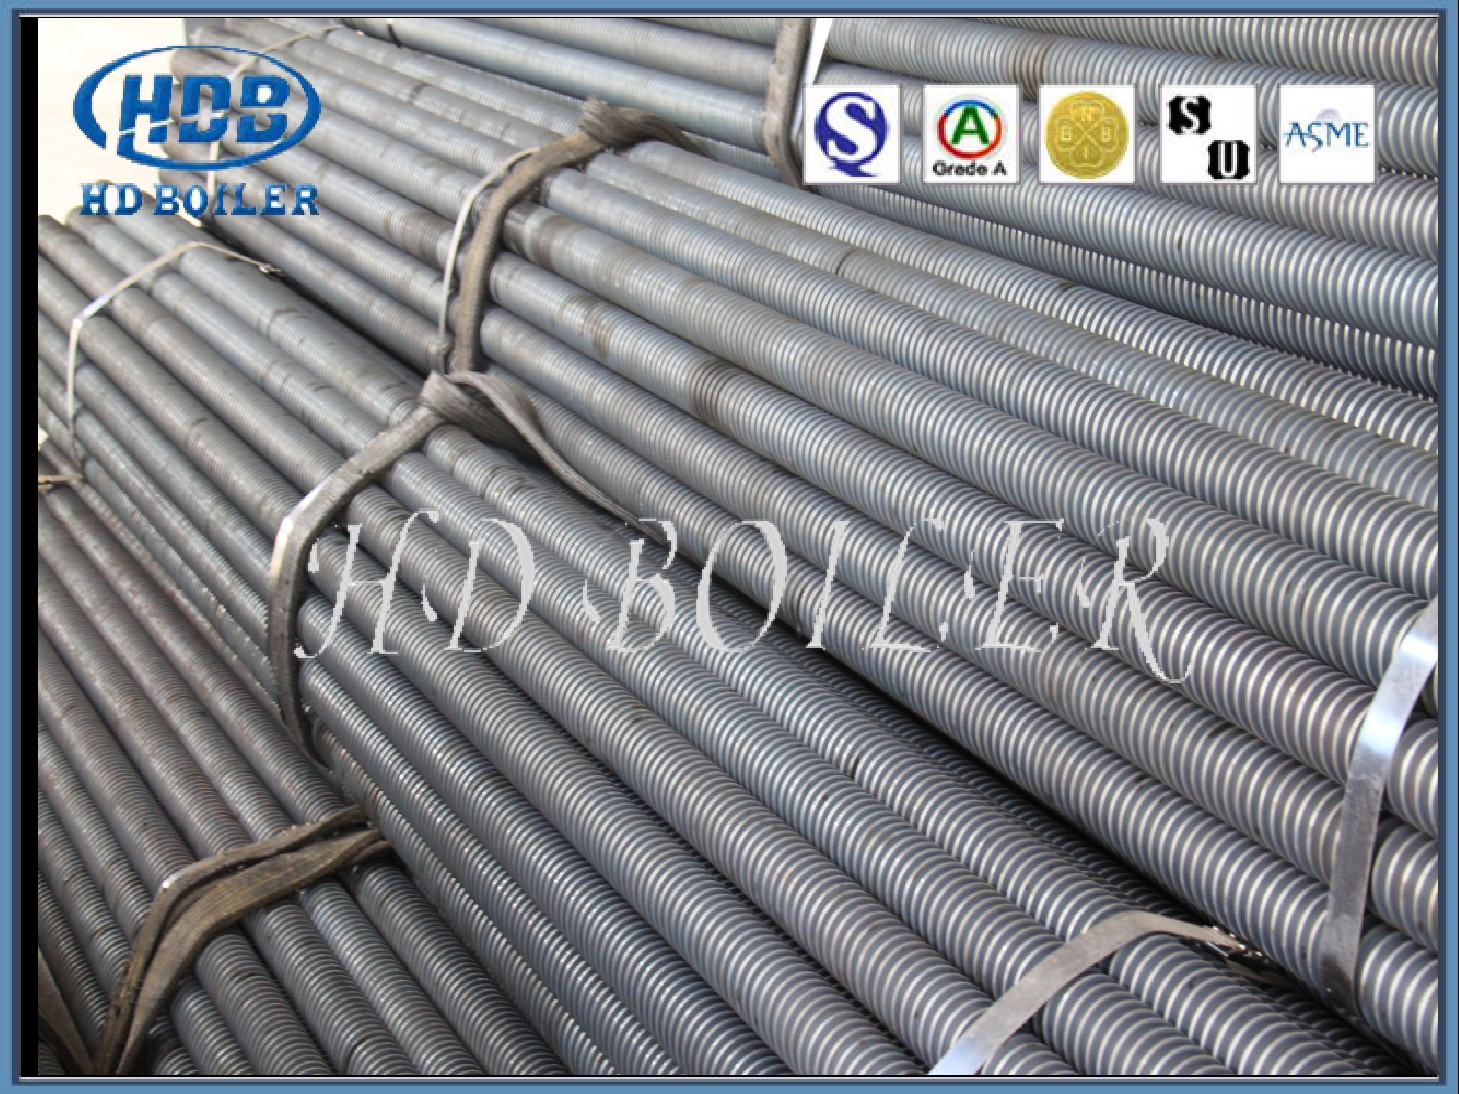 โรงงานผลิตไฟฟ้า Boiler Fin Tube Economizer Parts สำหรับยูทิลิตี้อายุการใช้งานยาวนาน